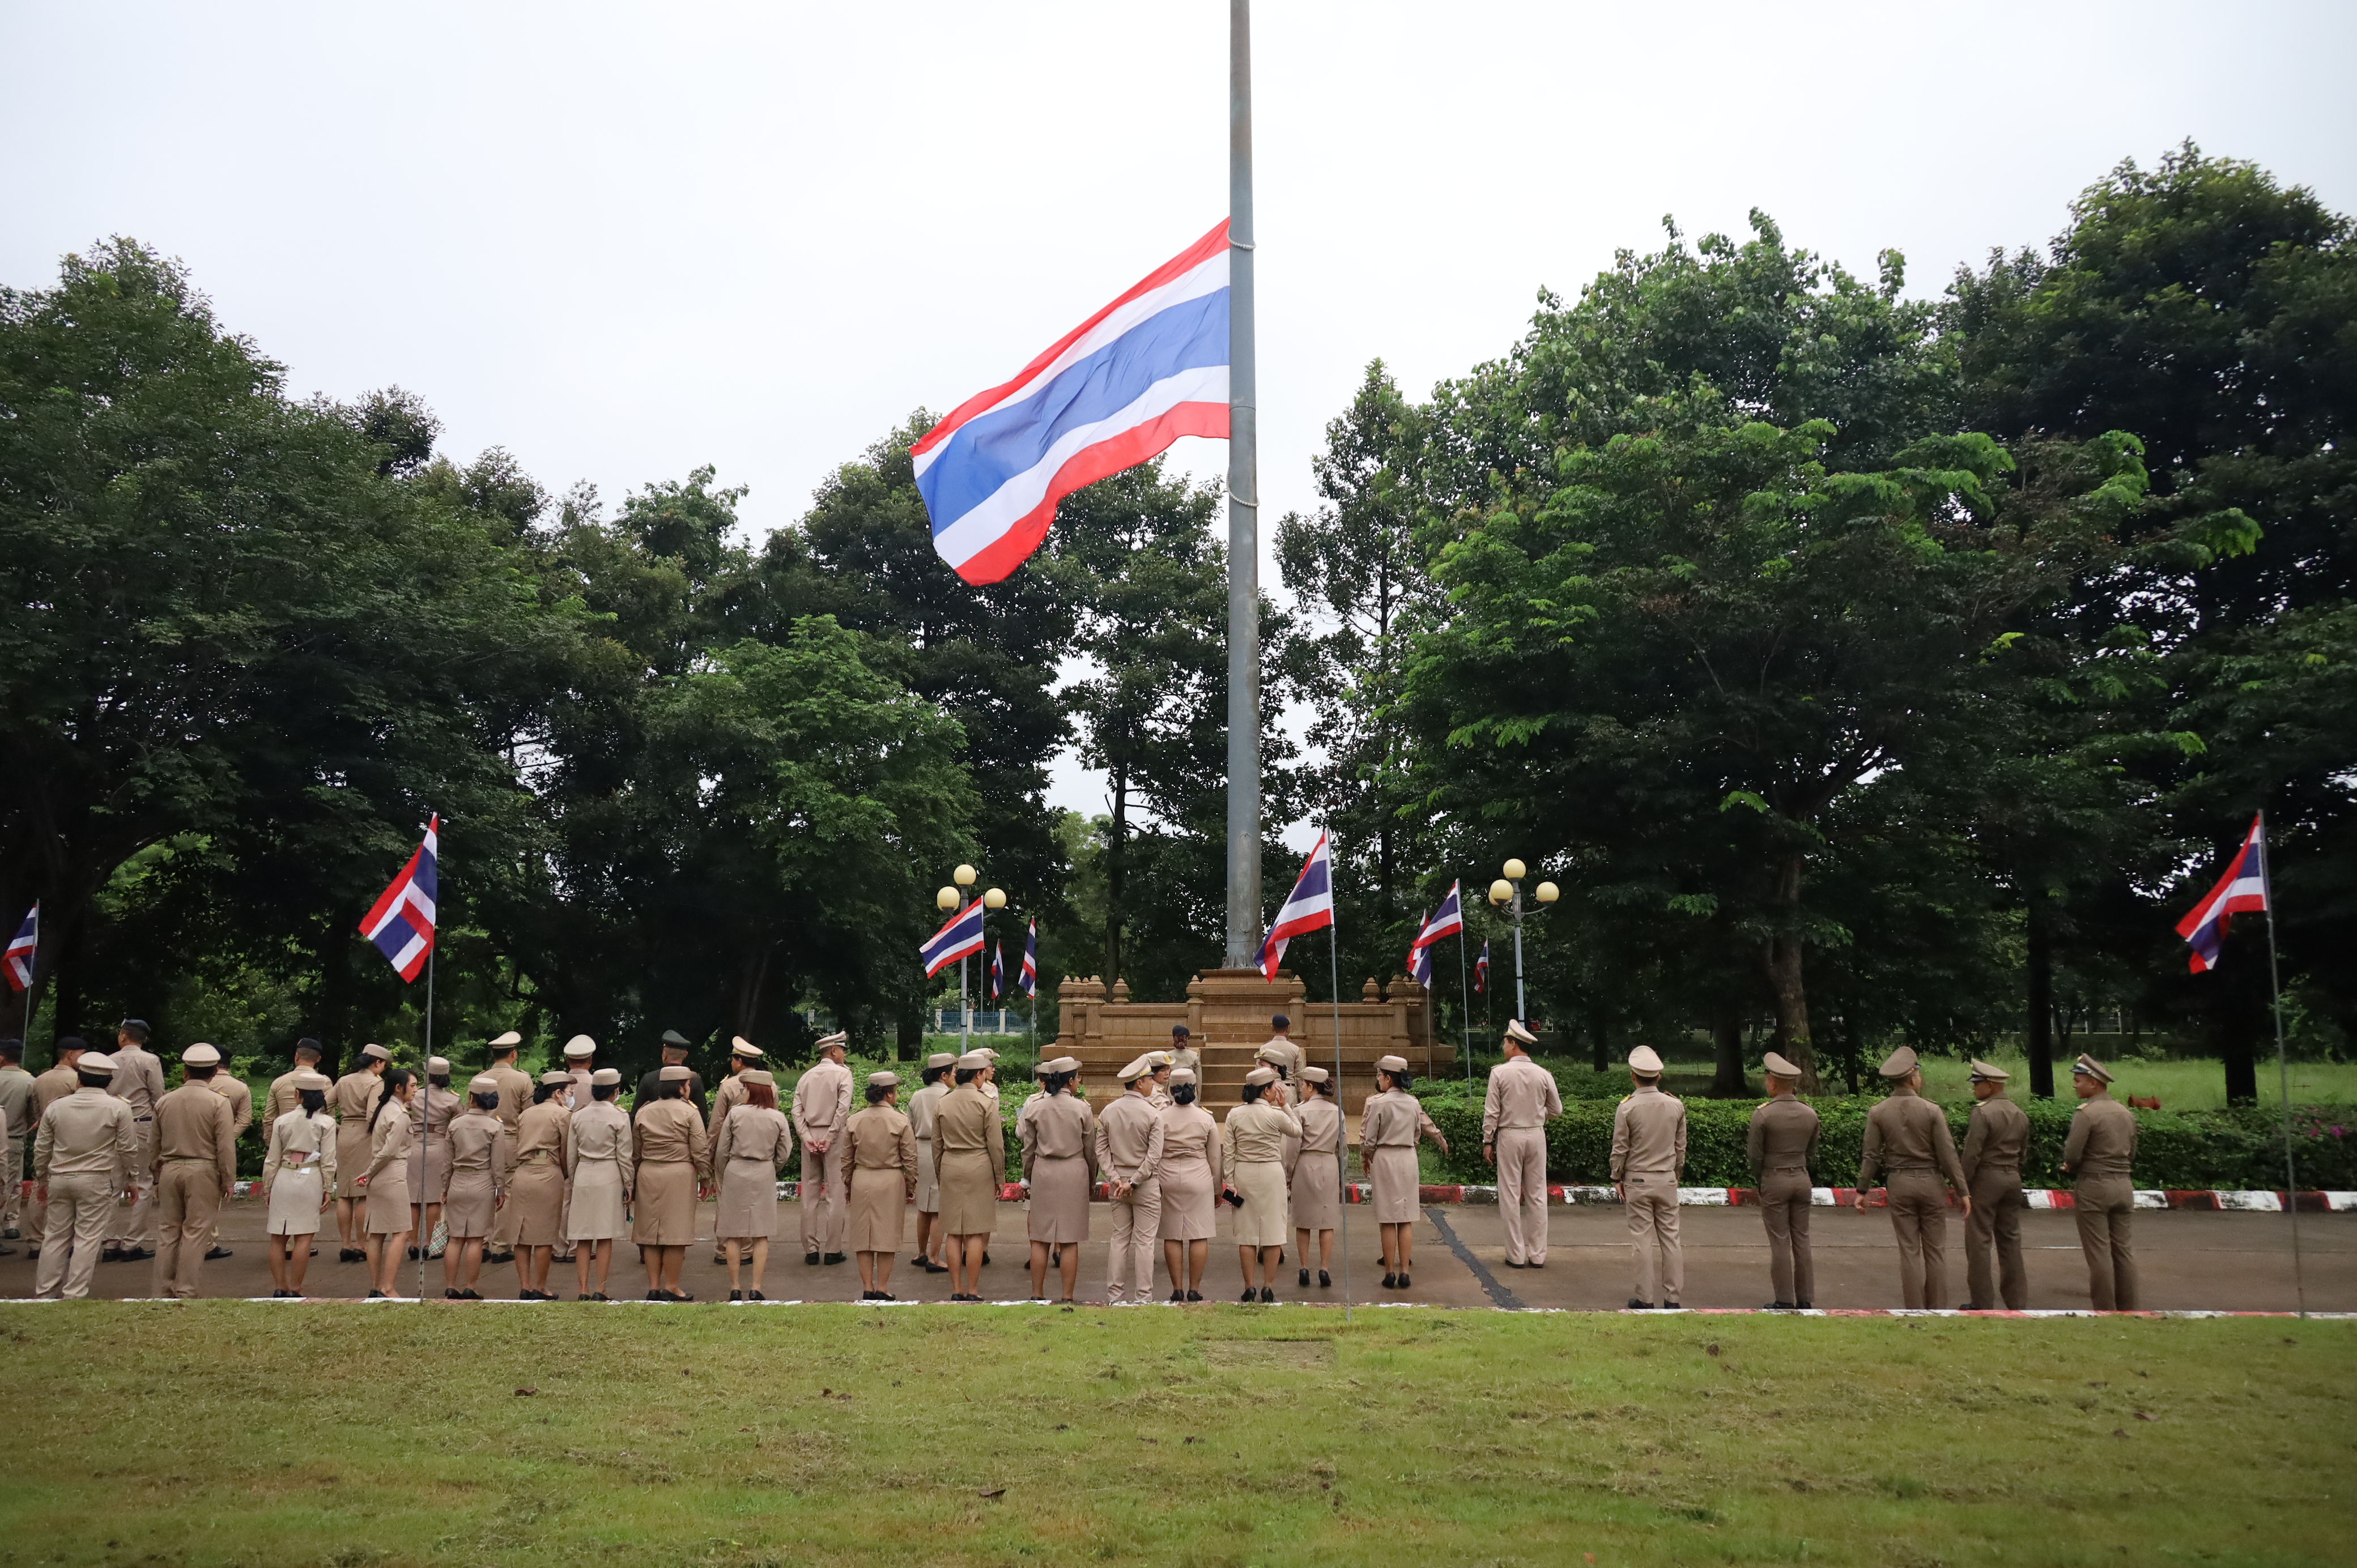 จังหวัดมหาสารคาม จัดกิจกรรมเนื่องใน "วันพระราชทานธงชาติไทย" (Thai National Flag Day) ประจำปี 2566 เพื่อน้อมรำลึกในพระมหากรุณาธิคุณพระบาทสมเด็จพระมงกุฎเกล้าเจ้าอยู่หัว ผู้ทรงพระราชทานธงไตรรงค์เป็นธงชาติไทย และร่วมสร้างความภาคภูมิใจของคนในชาติ